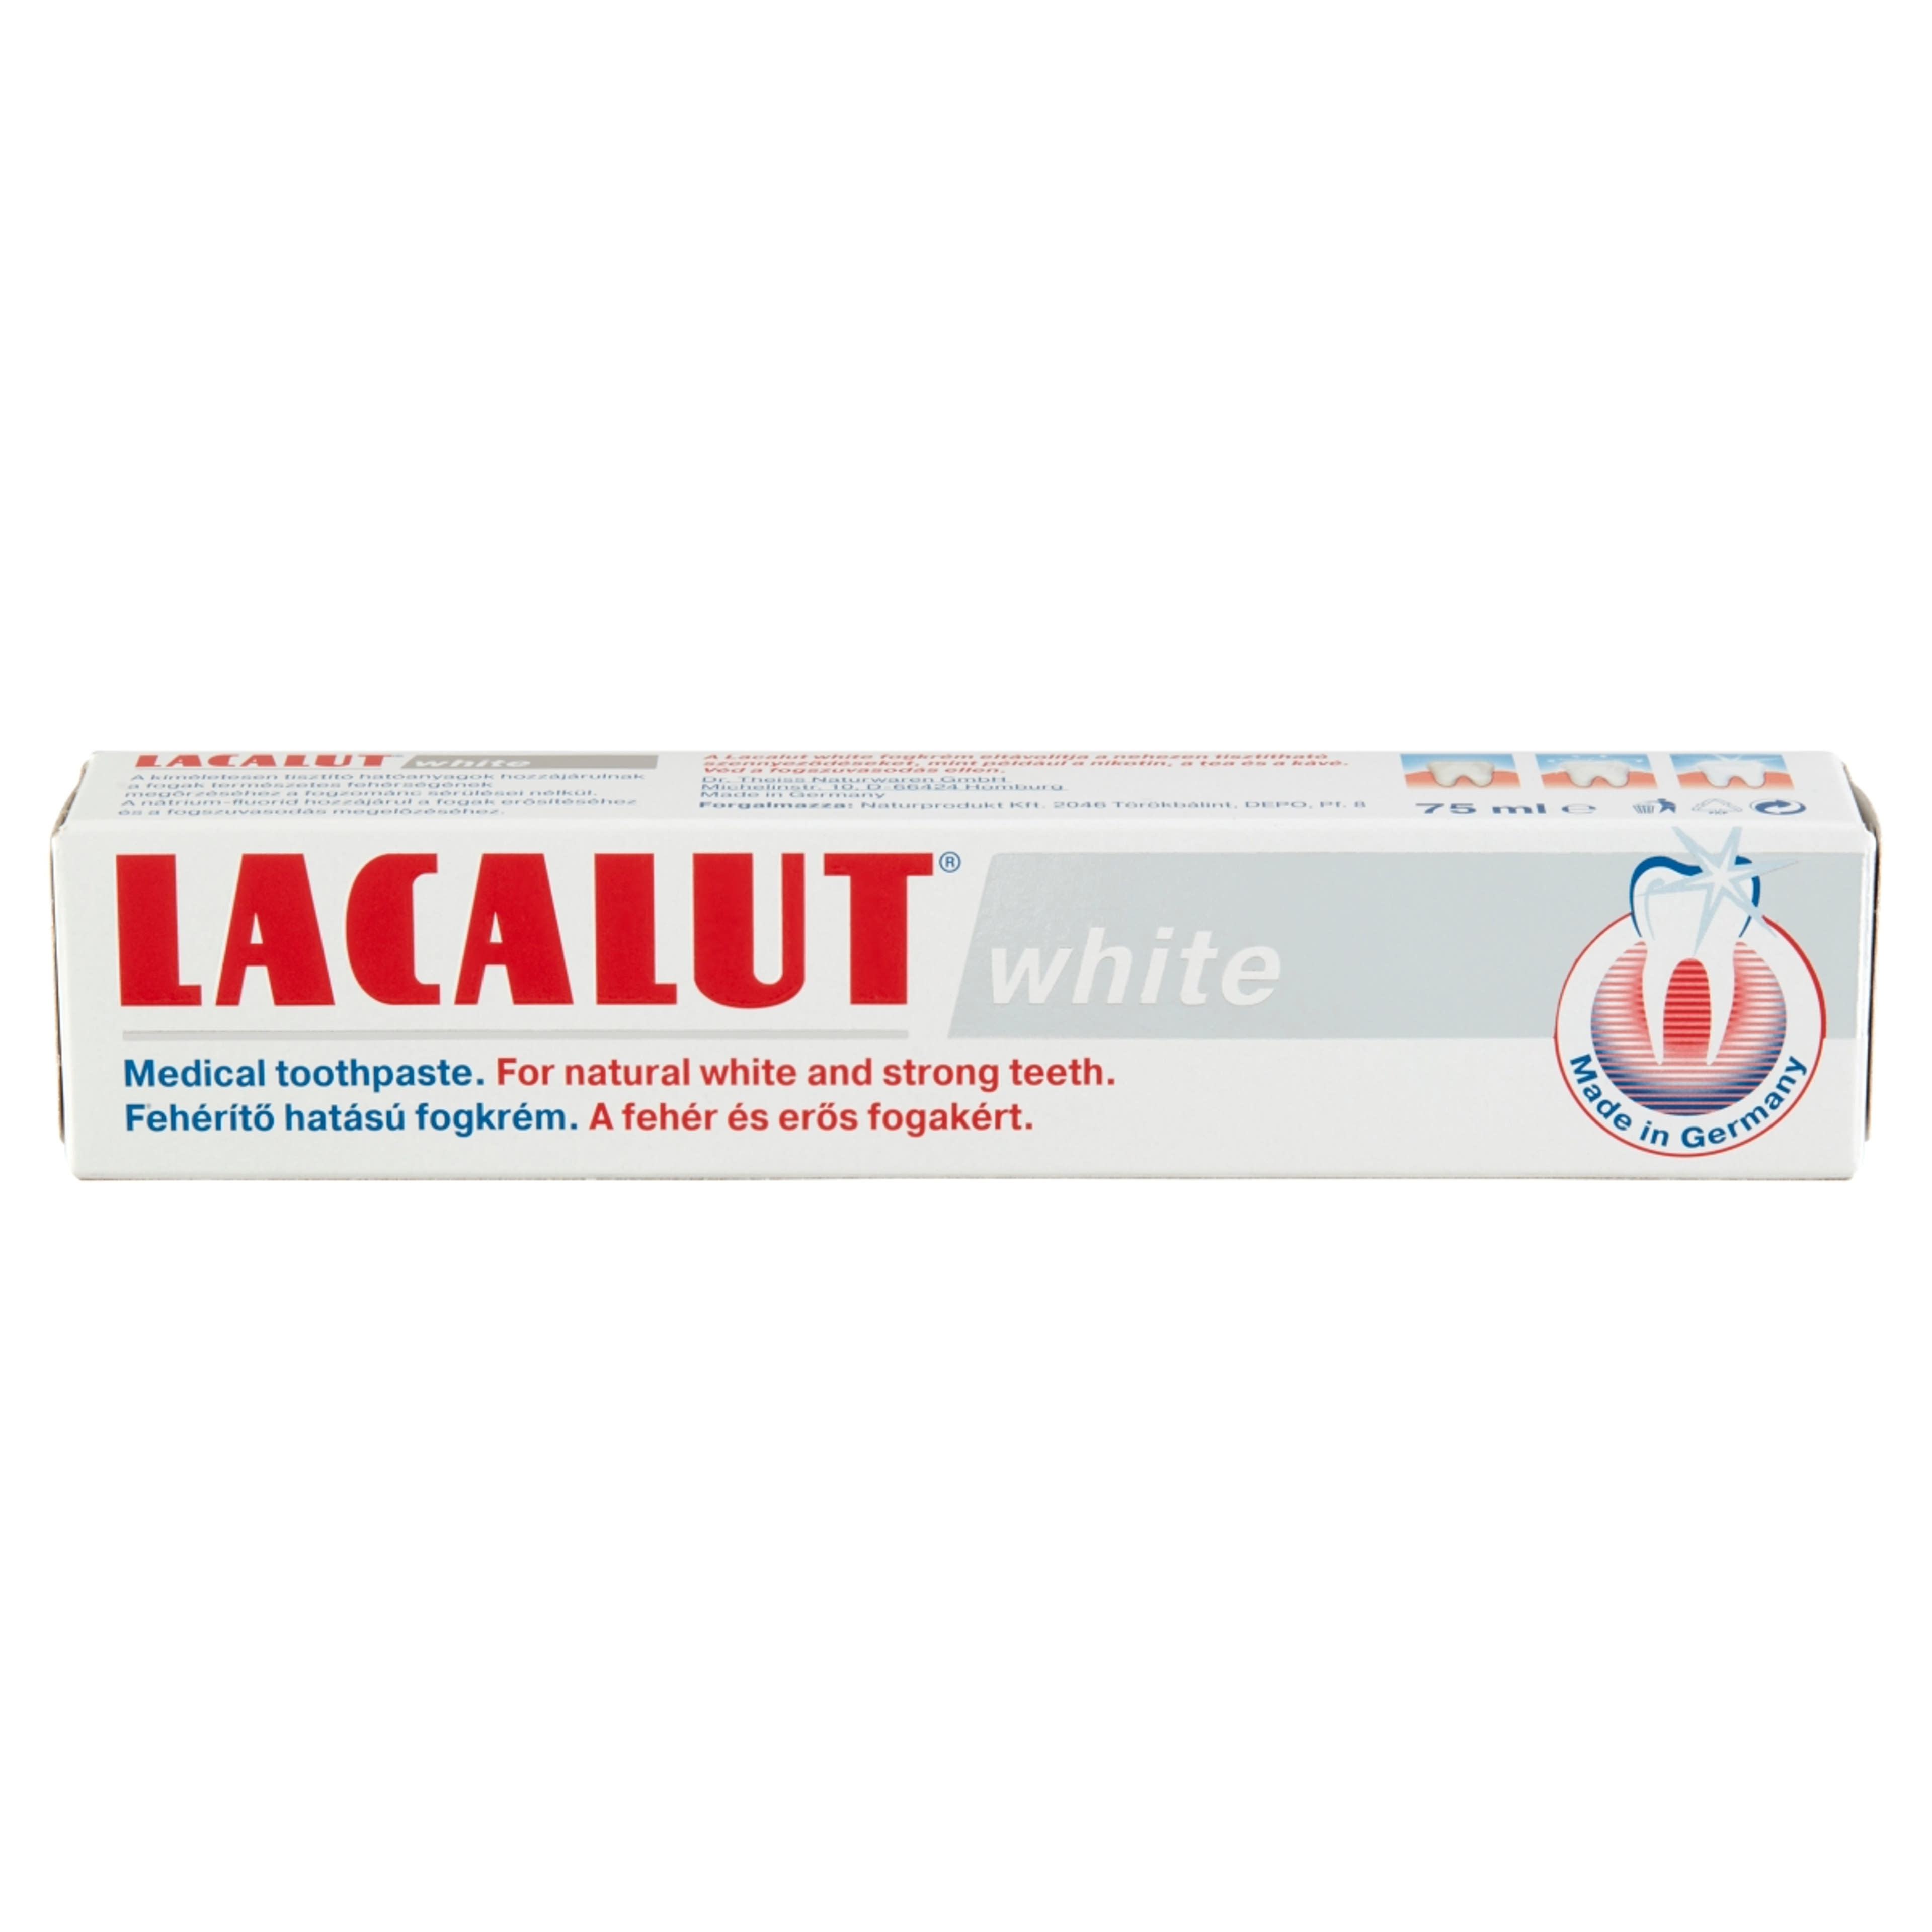 Lacalut White Fehéríto Hatású fogkrém - 75 ml-2